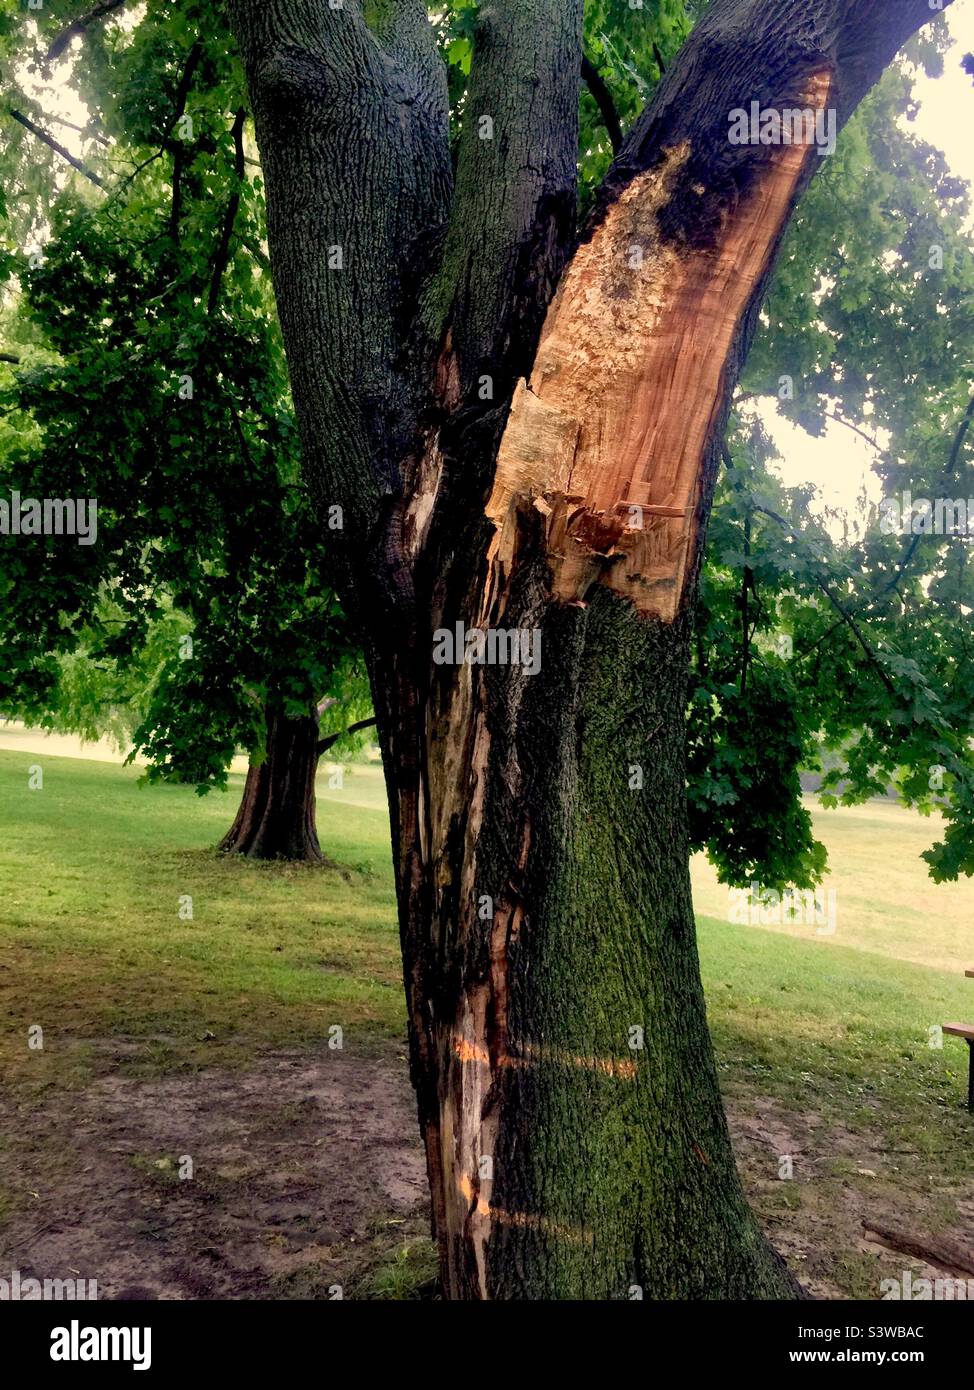 Reifer Baum, der durch Sturm beschädigt wurde und in einem Stadtpark in Ontario, Kanada, zum Abschlag gebracht wurde. Stockfoto